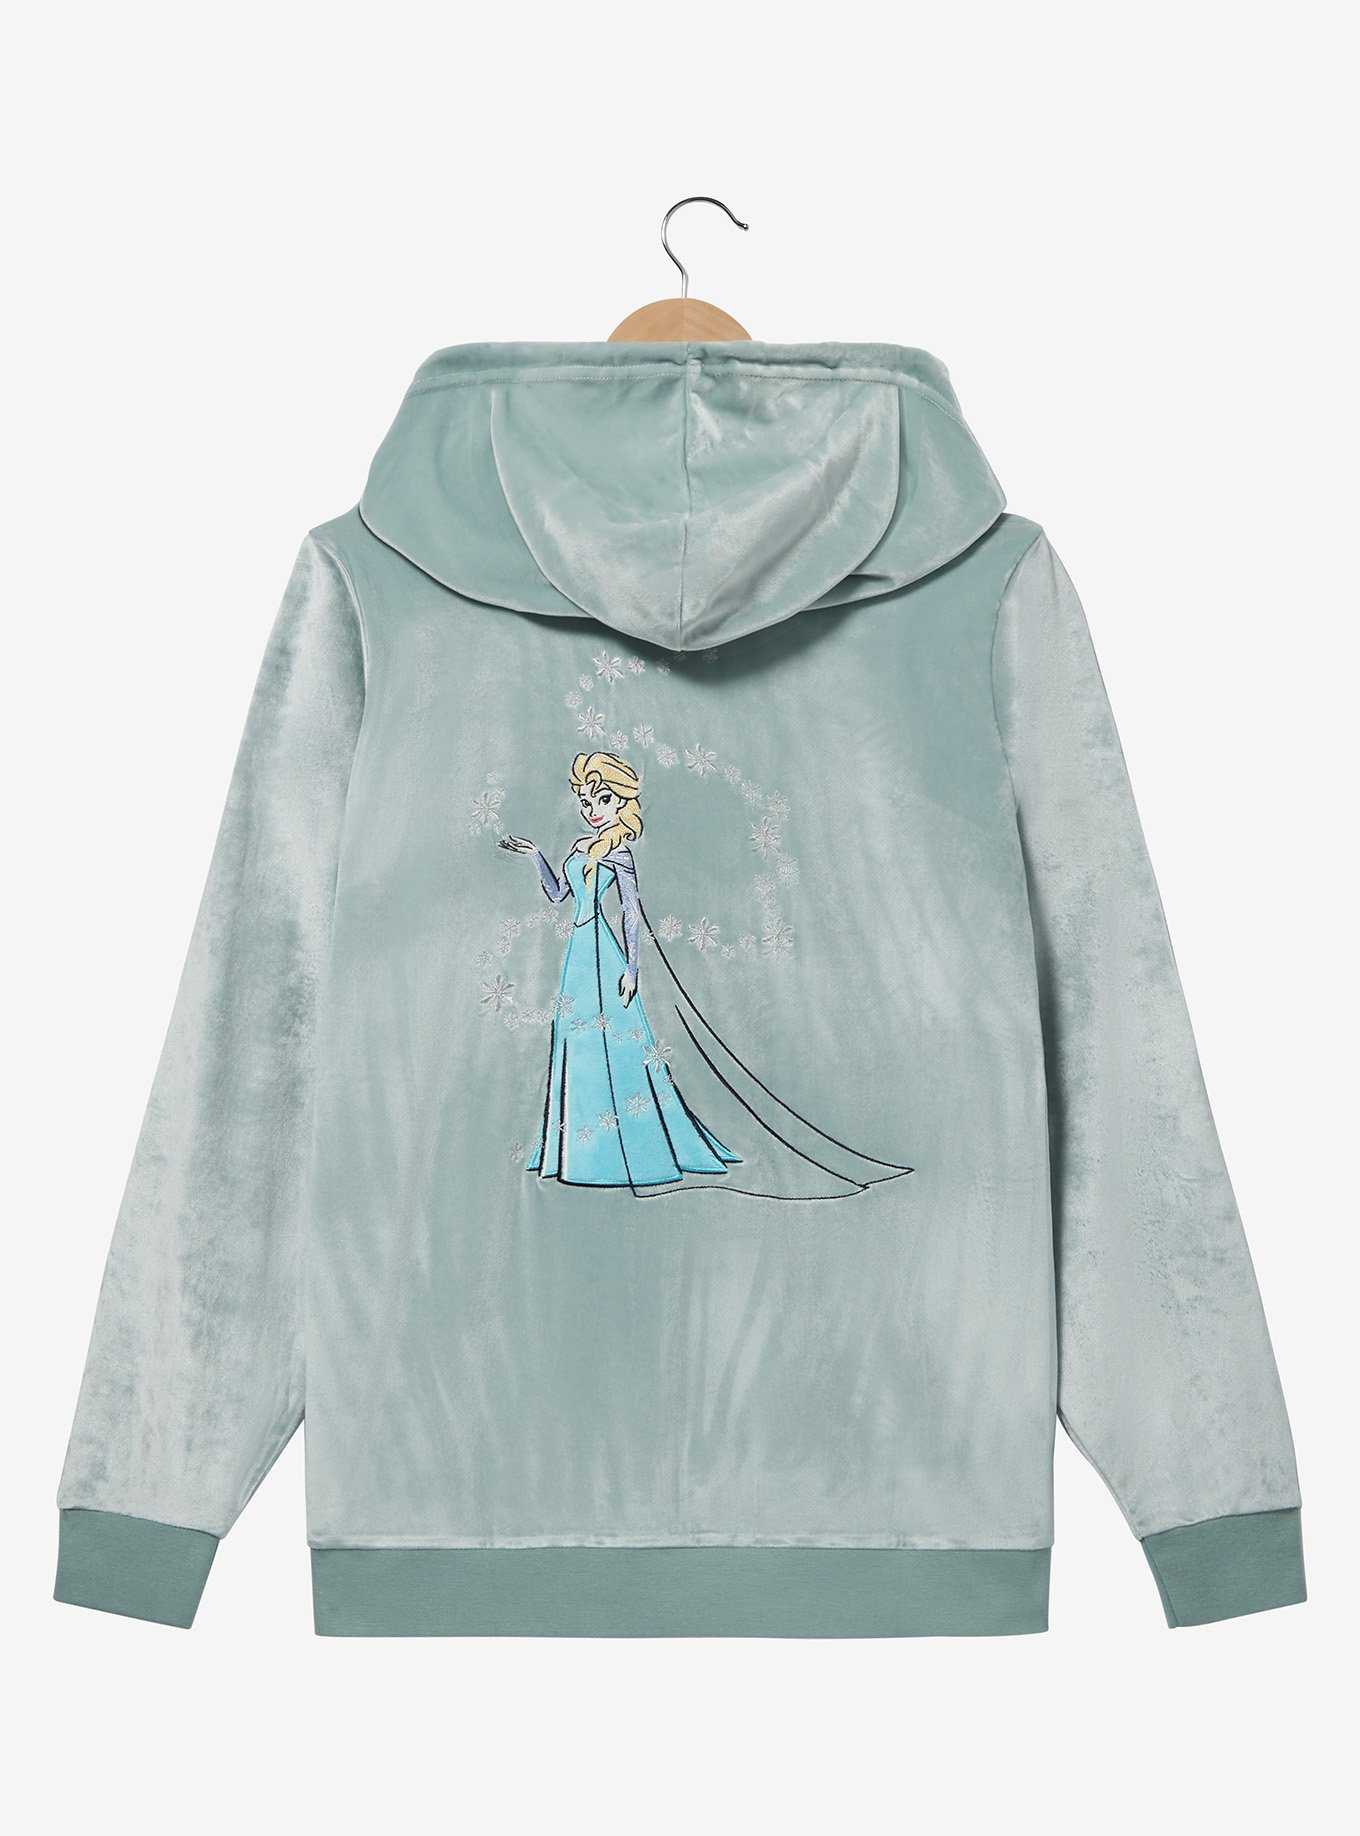 Disney Frozen Elsa Portrait Zip-Up Hoodie Plus Size, , hi-res